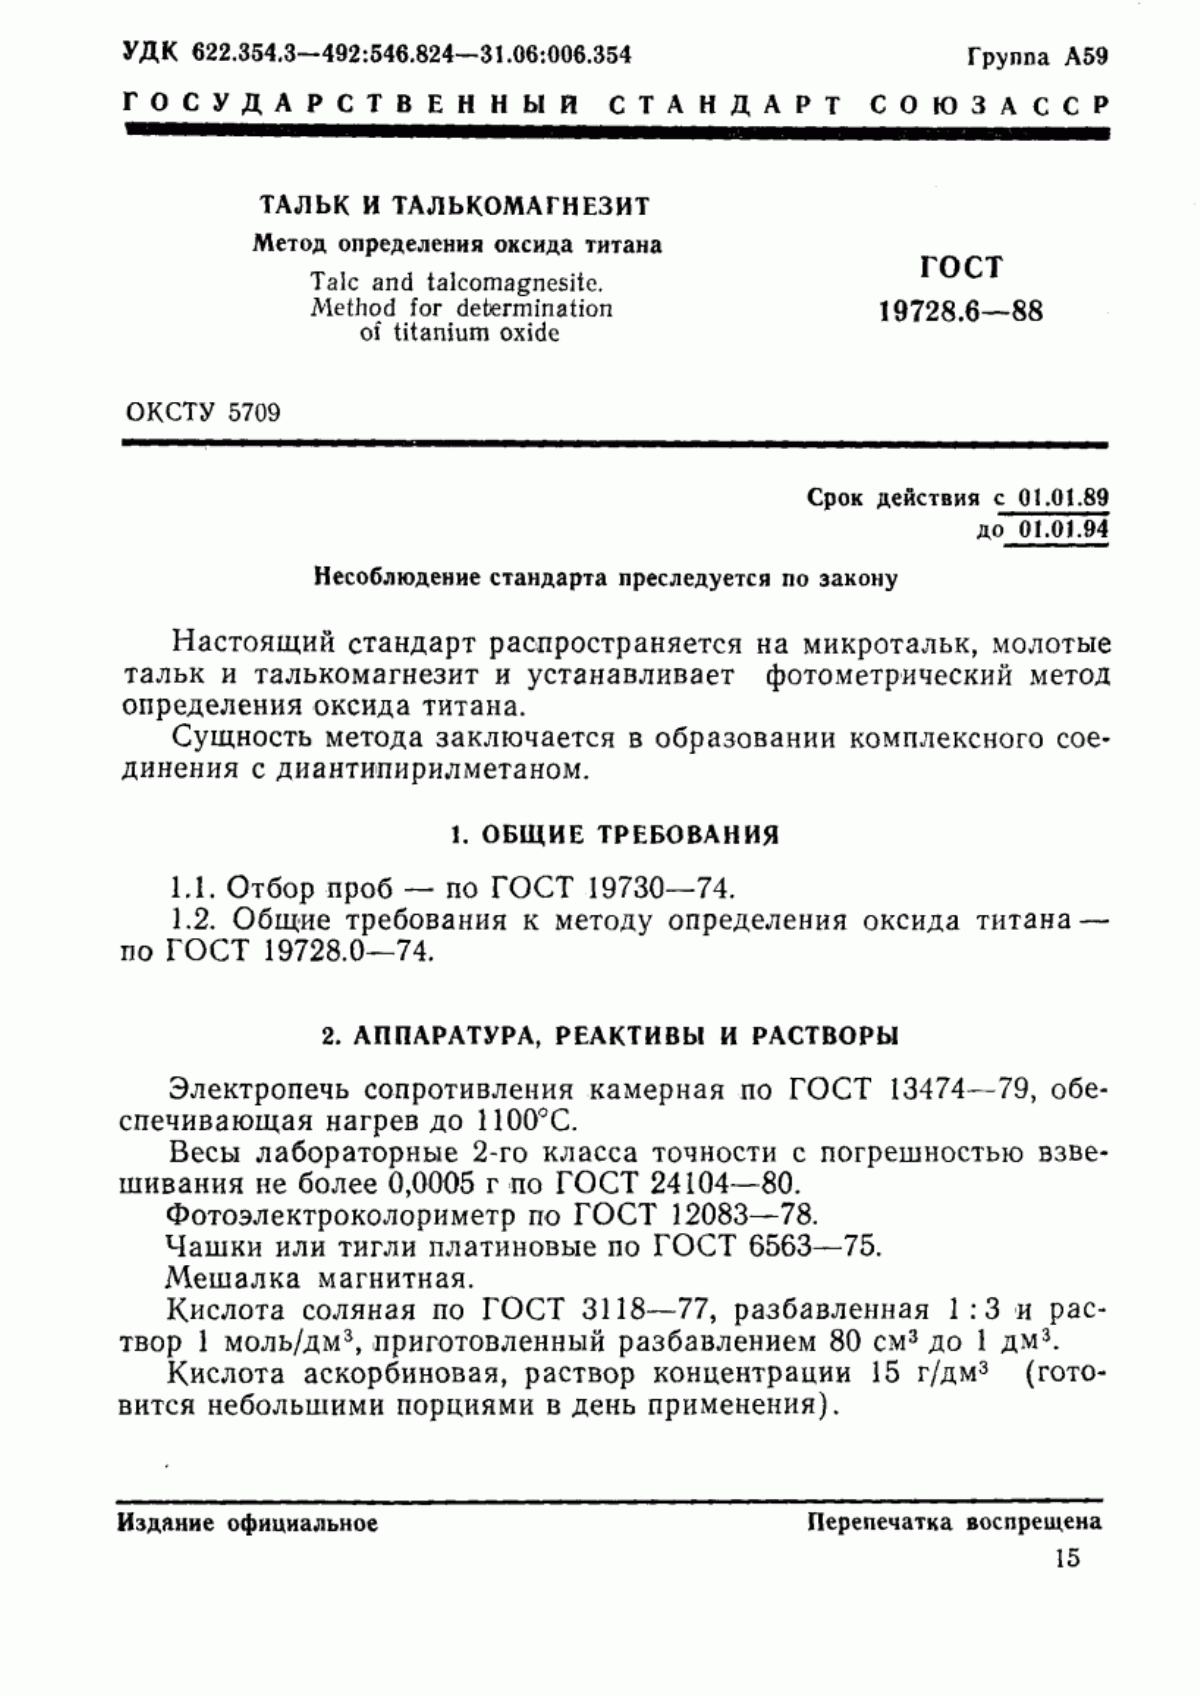 ГОСТ 19728.6-88 Тальк и талькомагнезит. Метод определения оксида титана